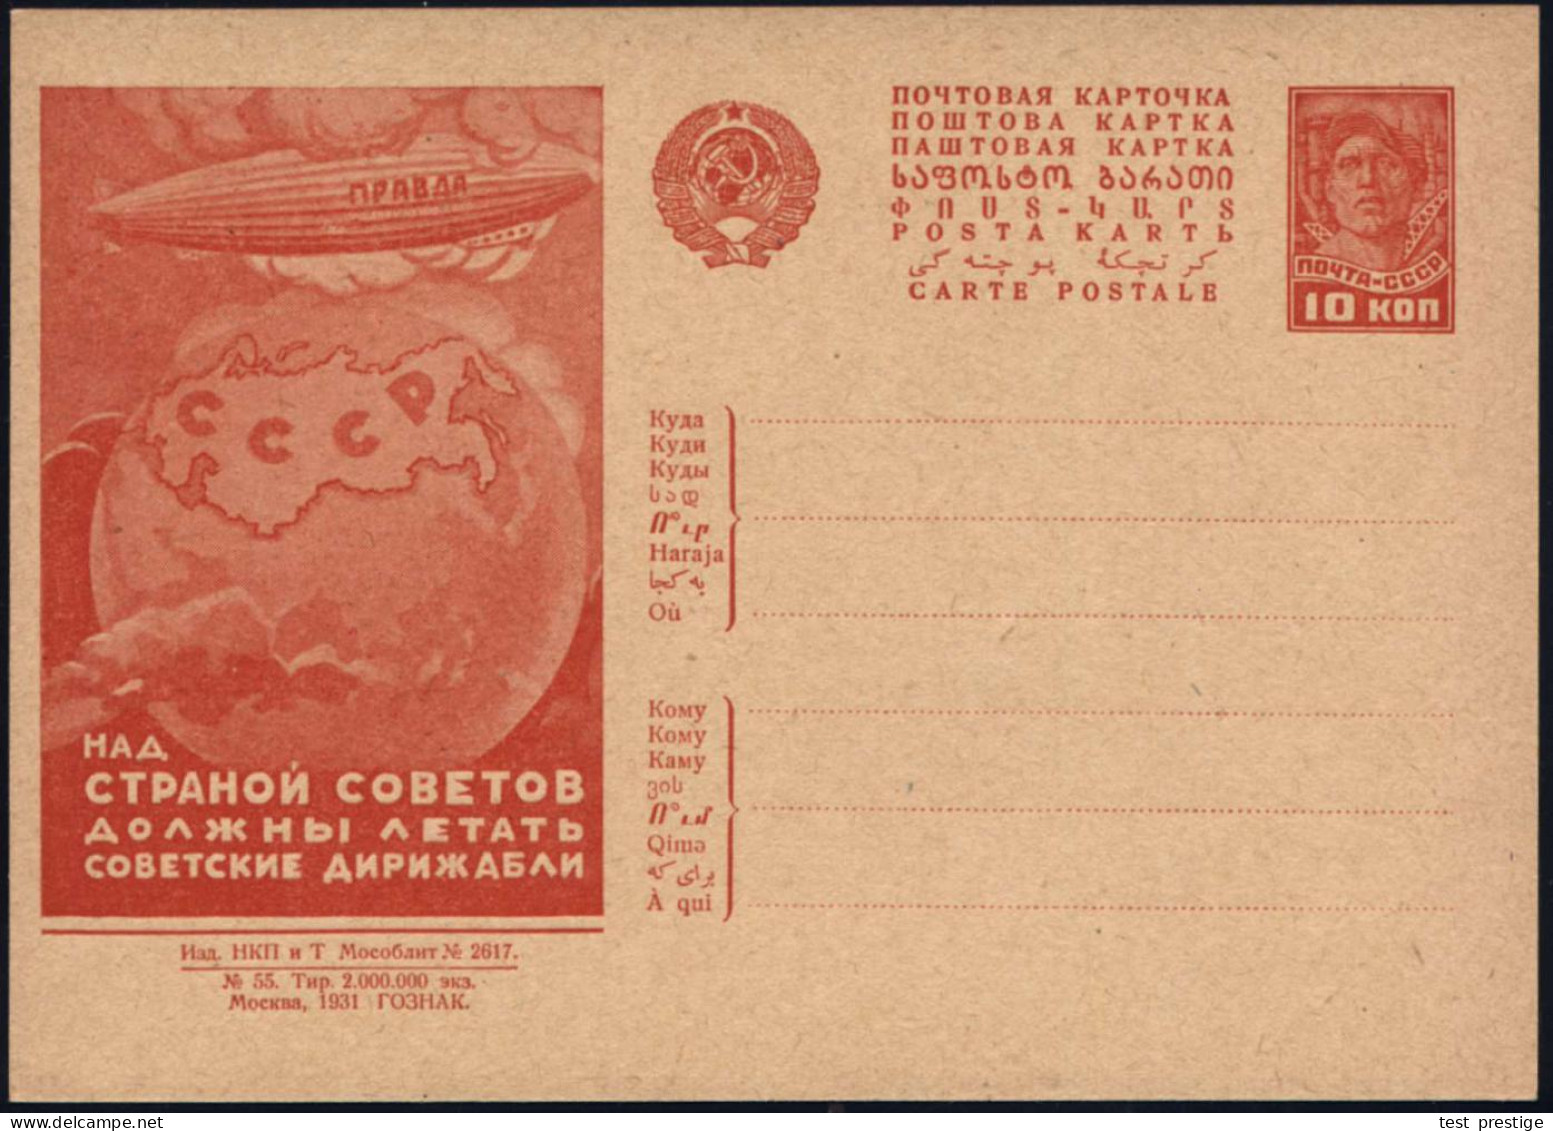 UdSSR 1932 (15.6.) 10 Kop. BiP Arbeiter, Rot: "Über Das Land Der Räte Müssen Sowjet. Luftschiffe Fliegen" = Luftschiff " - Zeppeline